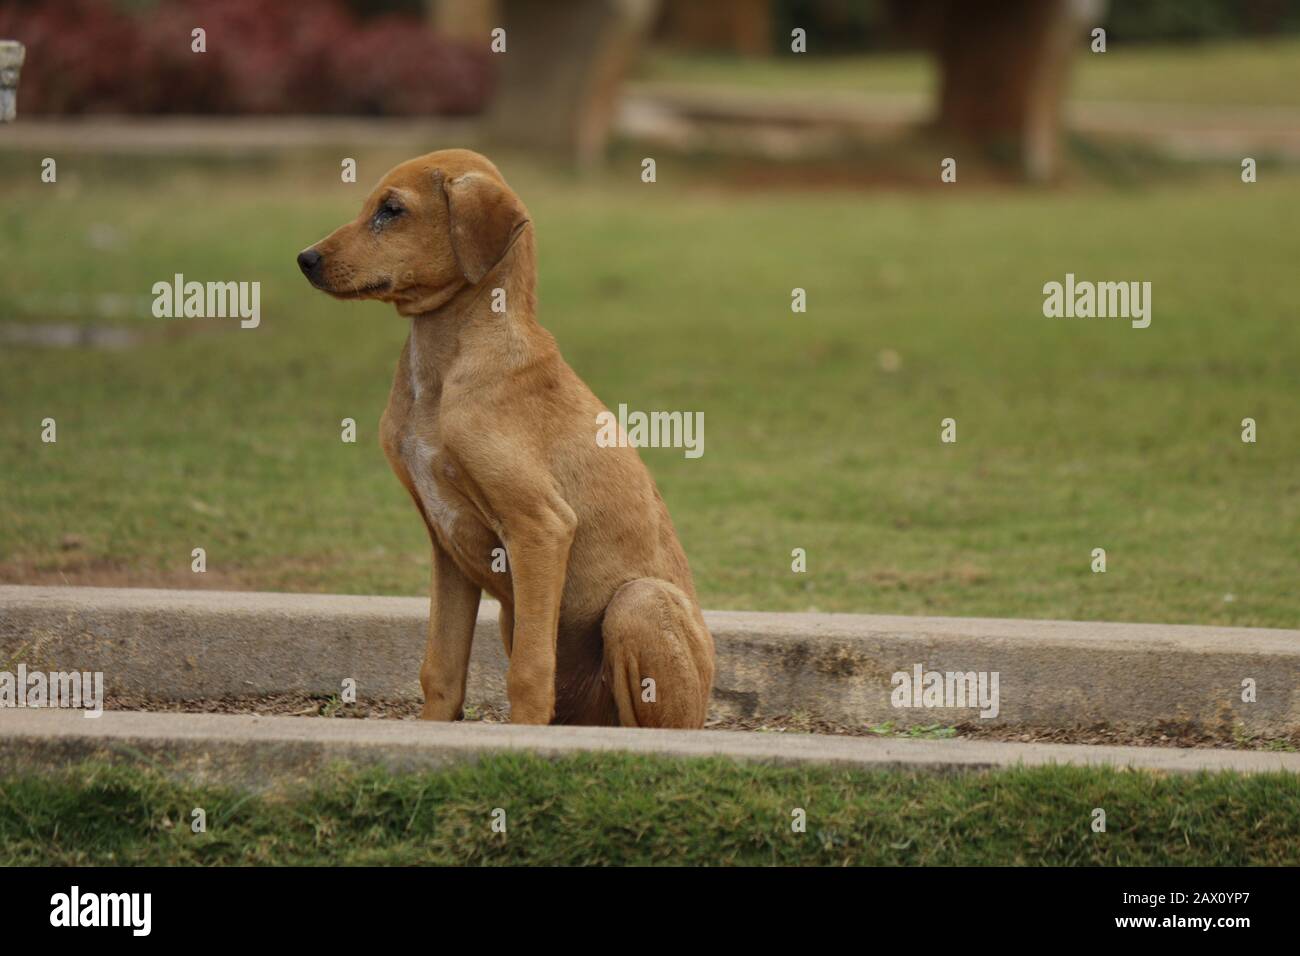 Hund, der mit Traurigkeit im Park steht, Traurigkeit der Tiere kann der Mensch nicht verstehen Stockfoto